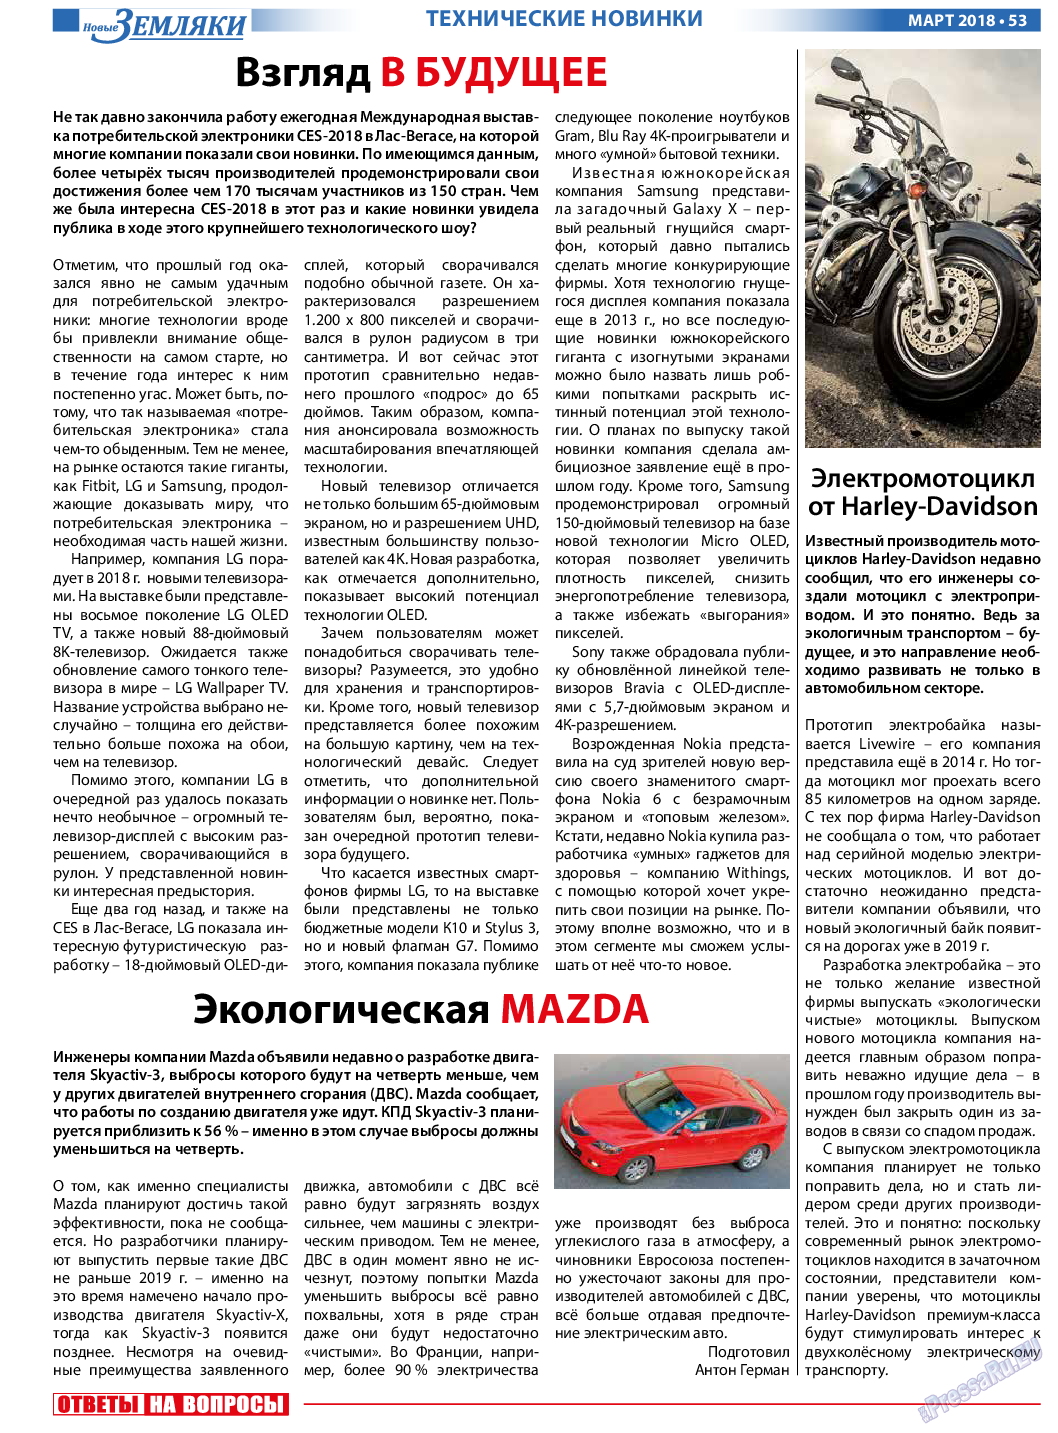 Новые Земляки (газета). 2018 год, номер 3, стр. 53